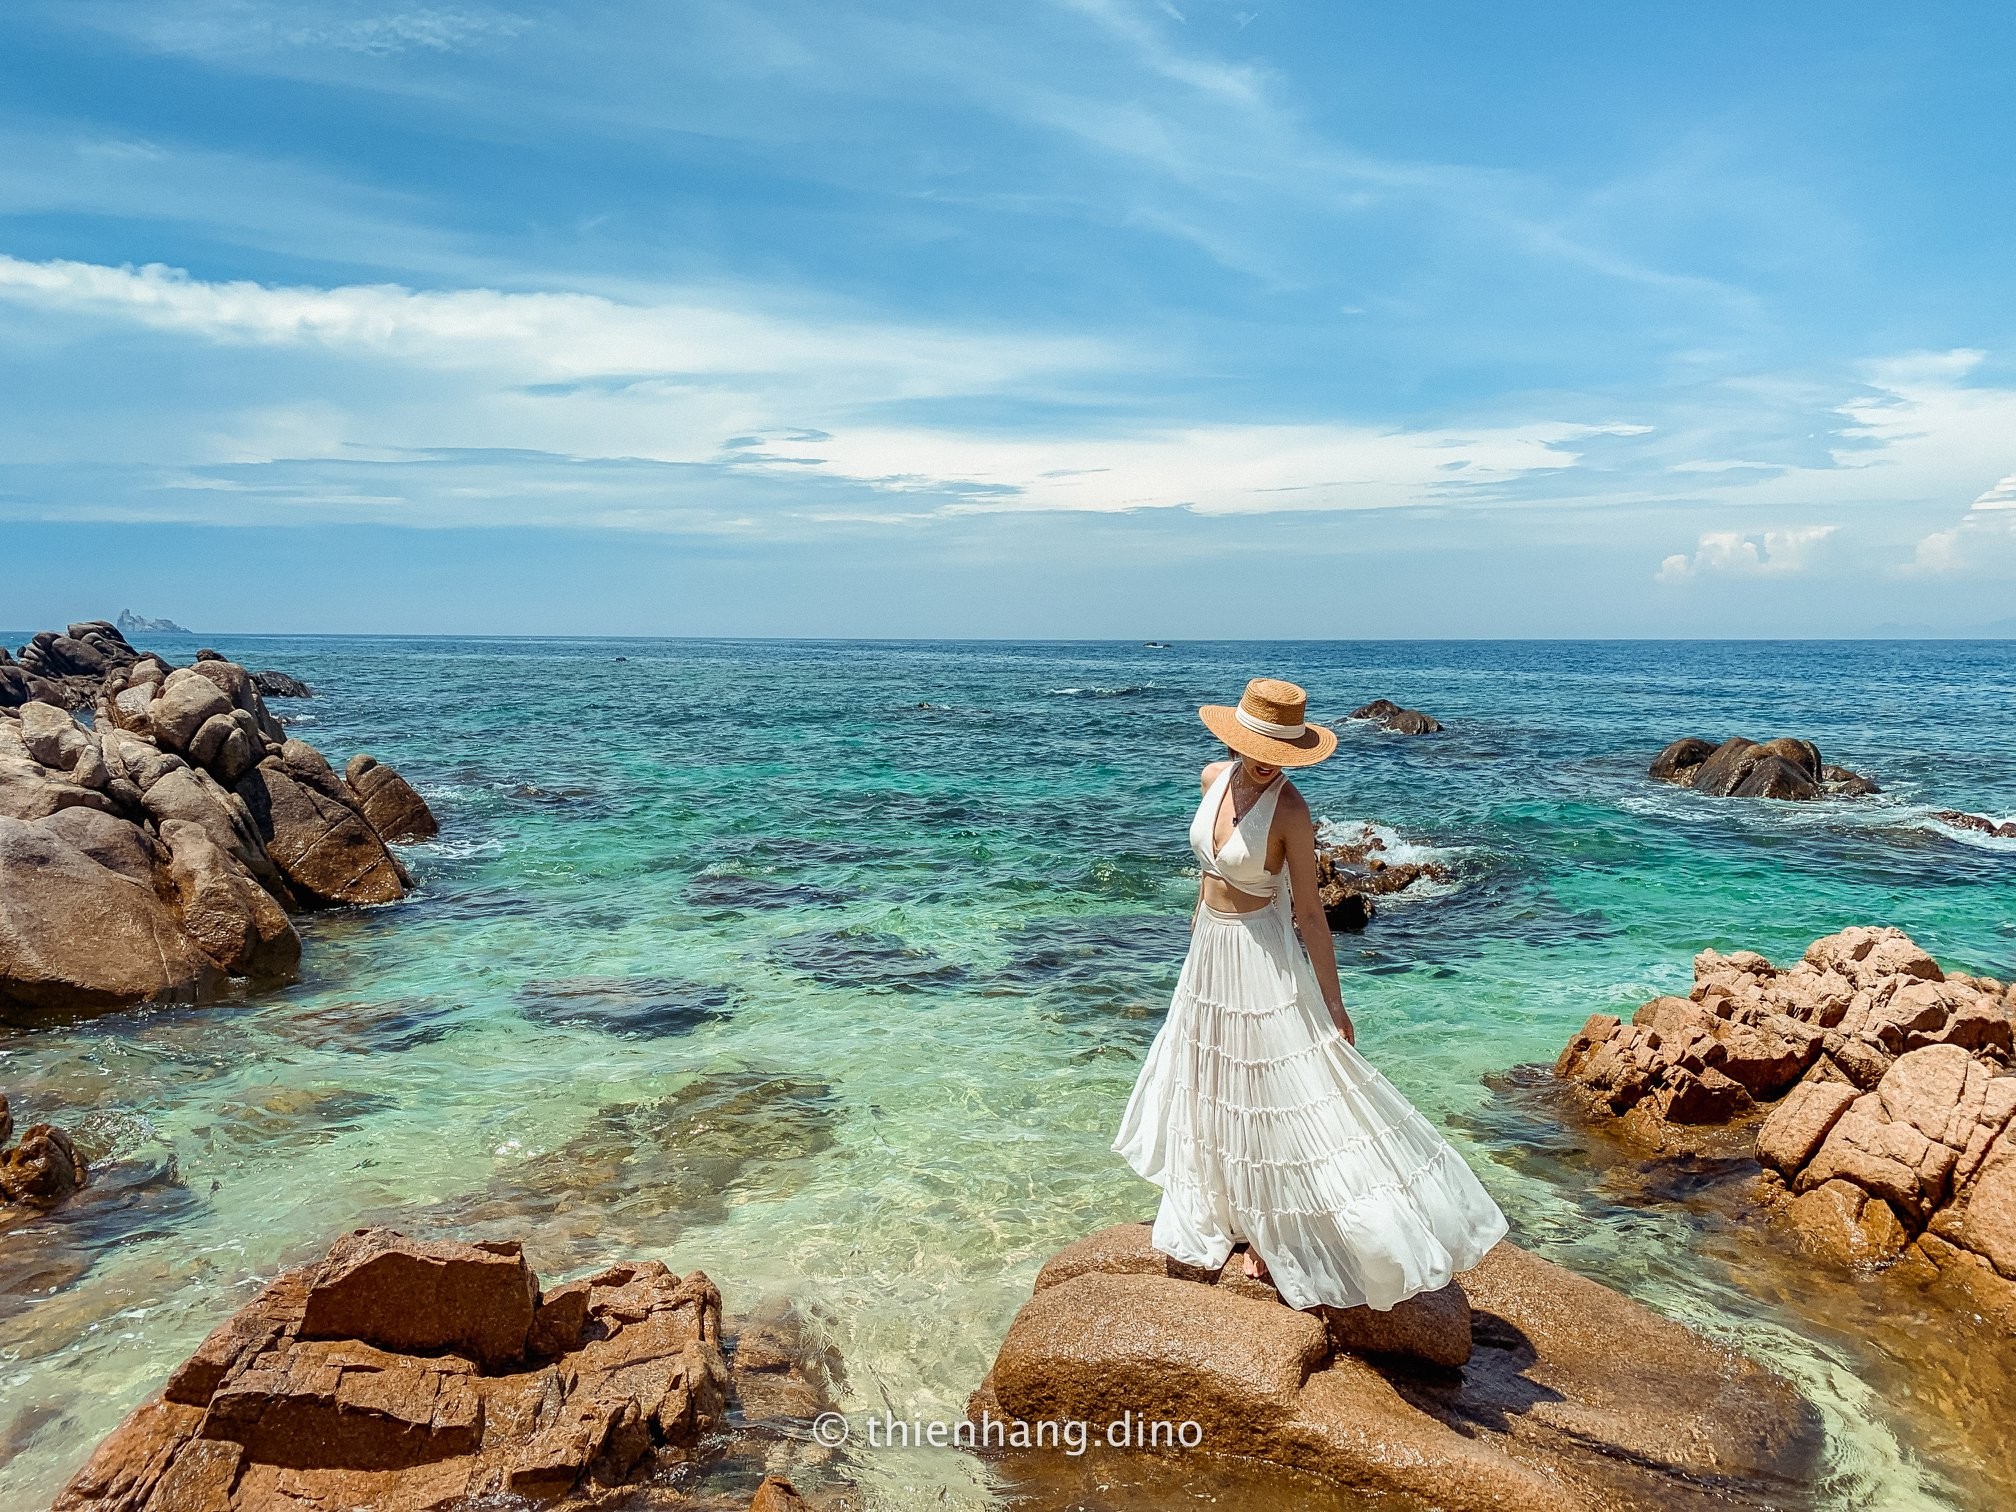 Cù Lao Xanh - một đảo đẹp như mơ ở Quy Nhơn, sẽ là địa điểm tuyệt vời cho một bộ ảnh cưới độc đáo. Hãy cùng tìm hiểu cuộc hành trình khám phá đảo và lưu giữ những kỷ niệm đáng nhớ bằng việc chụp những bức ảnh cưới tuyệt vời tại đây.